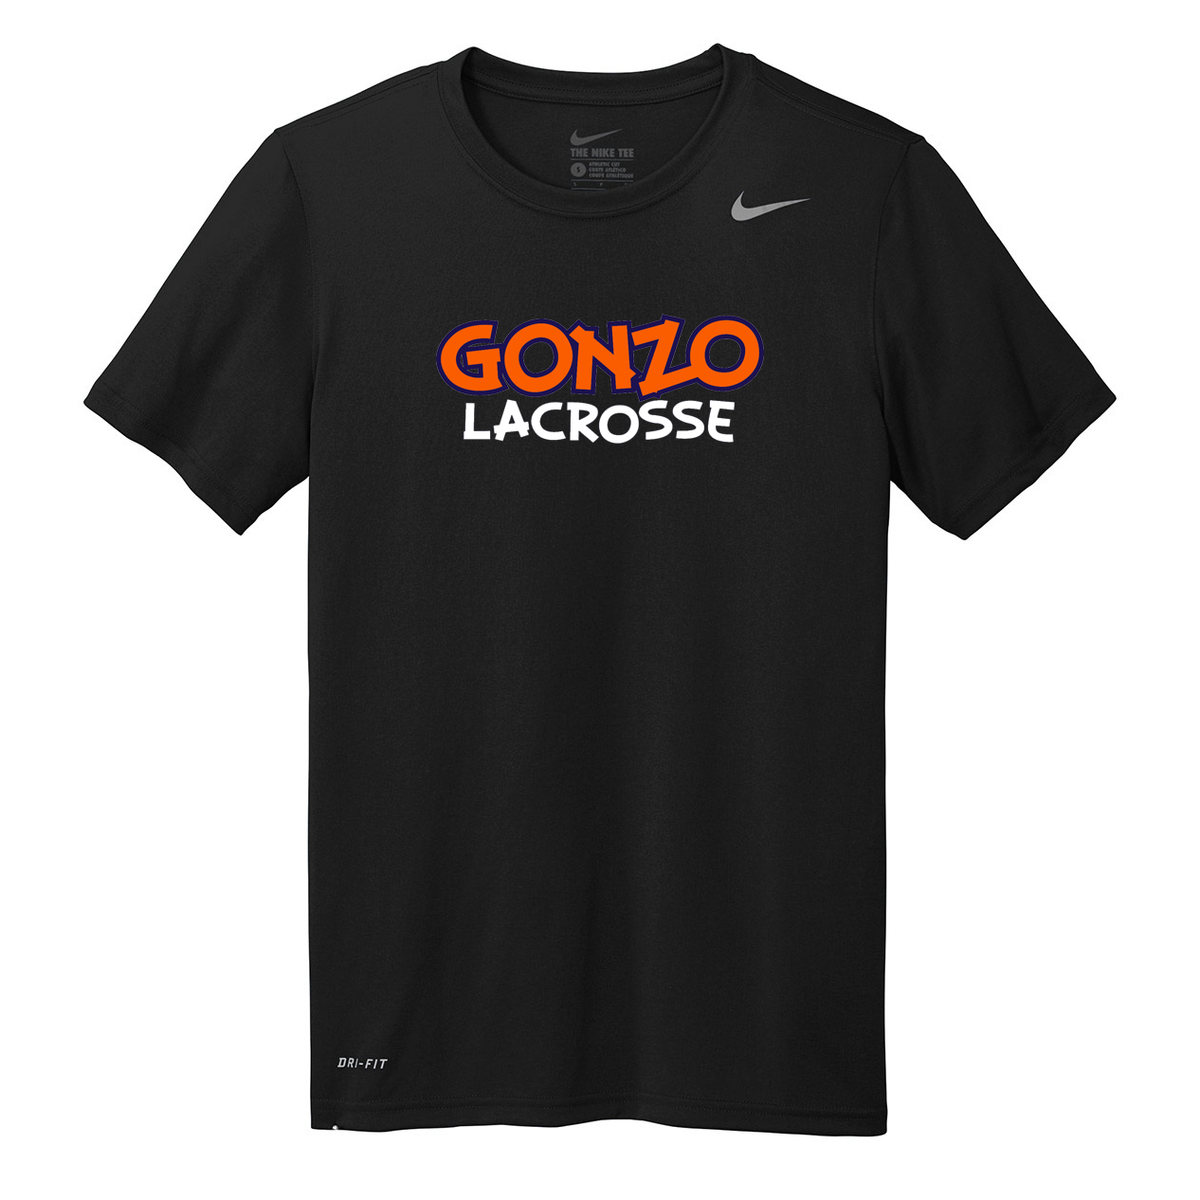 Gonzo Lacrosse Nike Legend Tee